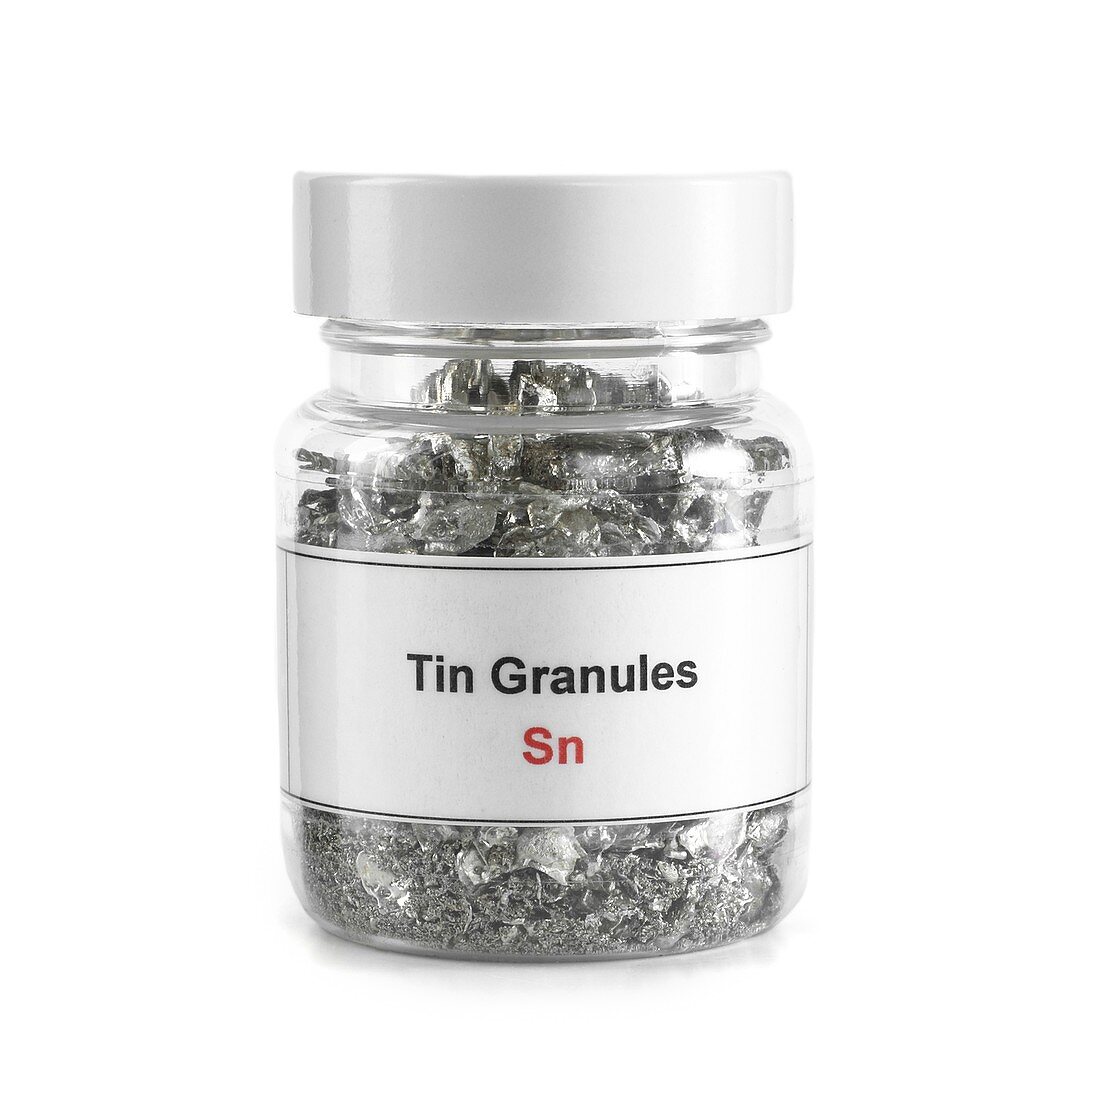 Jar containing tin granules